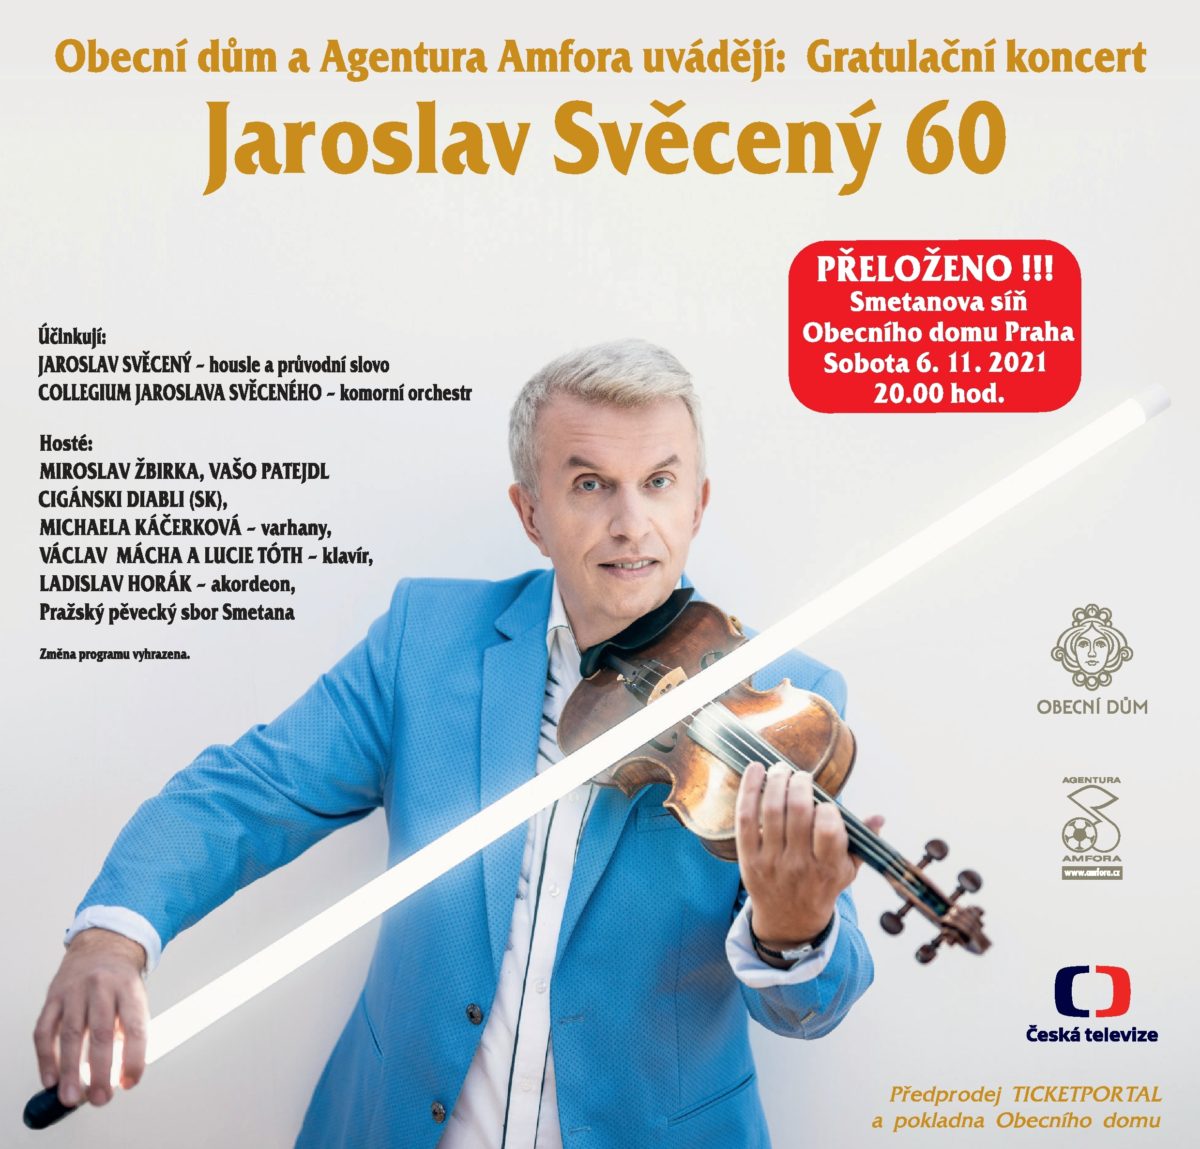 Gratulační koncert Jaroslav Svěcený 60 je znovu přesunut !